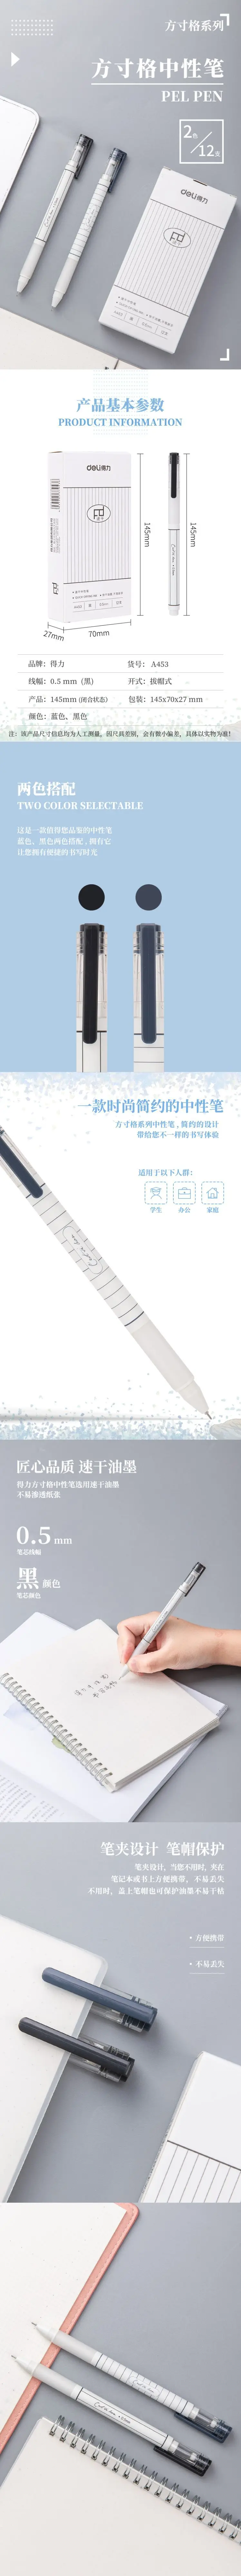 Гелевые, Дели ручка 2 предмета 0,5 мм студентов, пишущих g черный высококачественные чернила гелевая ручка Kawaii для канцелярских принадлежностей творческие канцелярские принадлежности